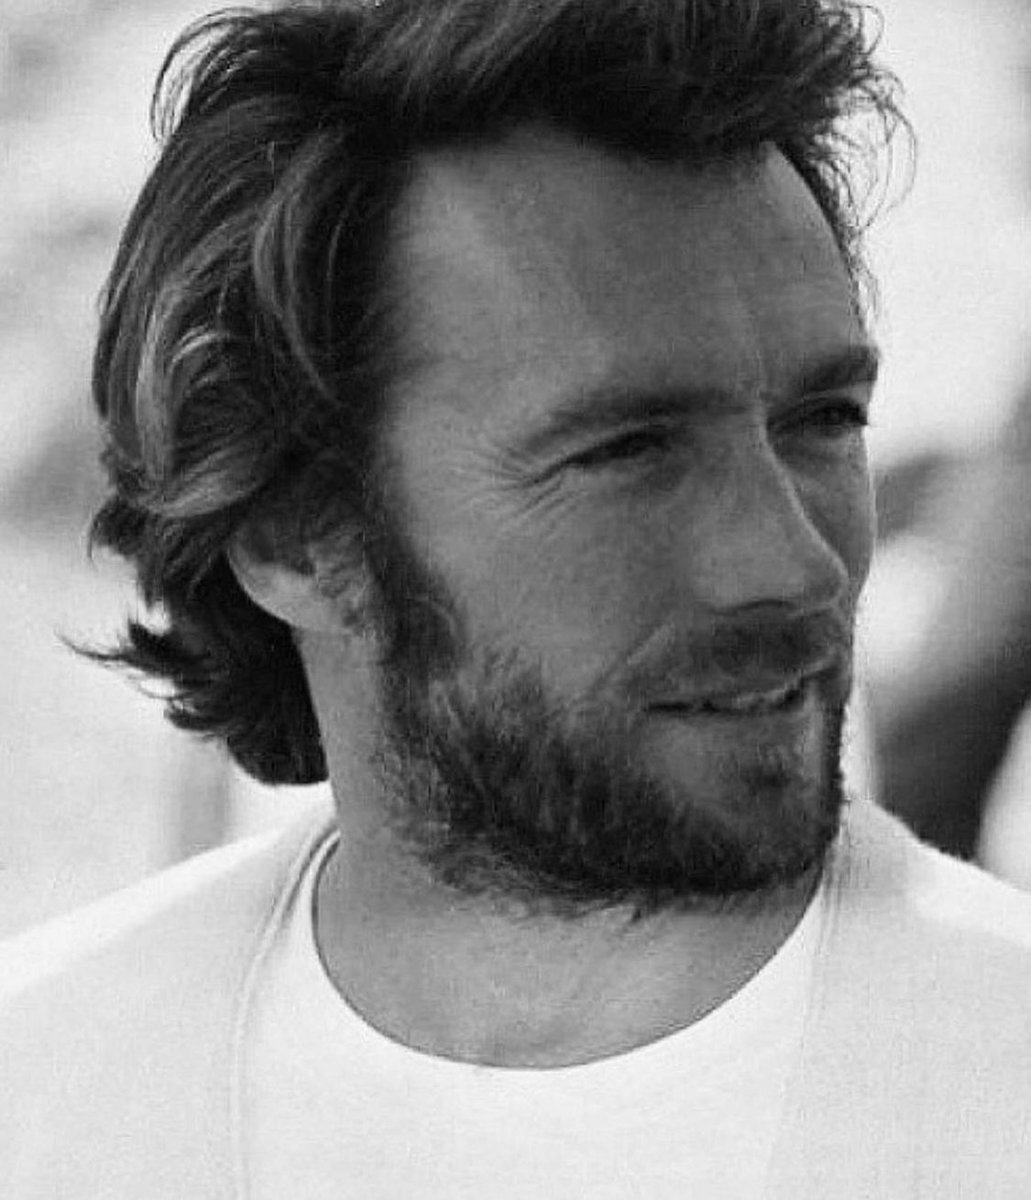 Né le 31 mai 1930, Clint Eastwood fête aujourd’hui ses 94 printemps. Le plus grand des Géants ❤️🙏